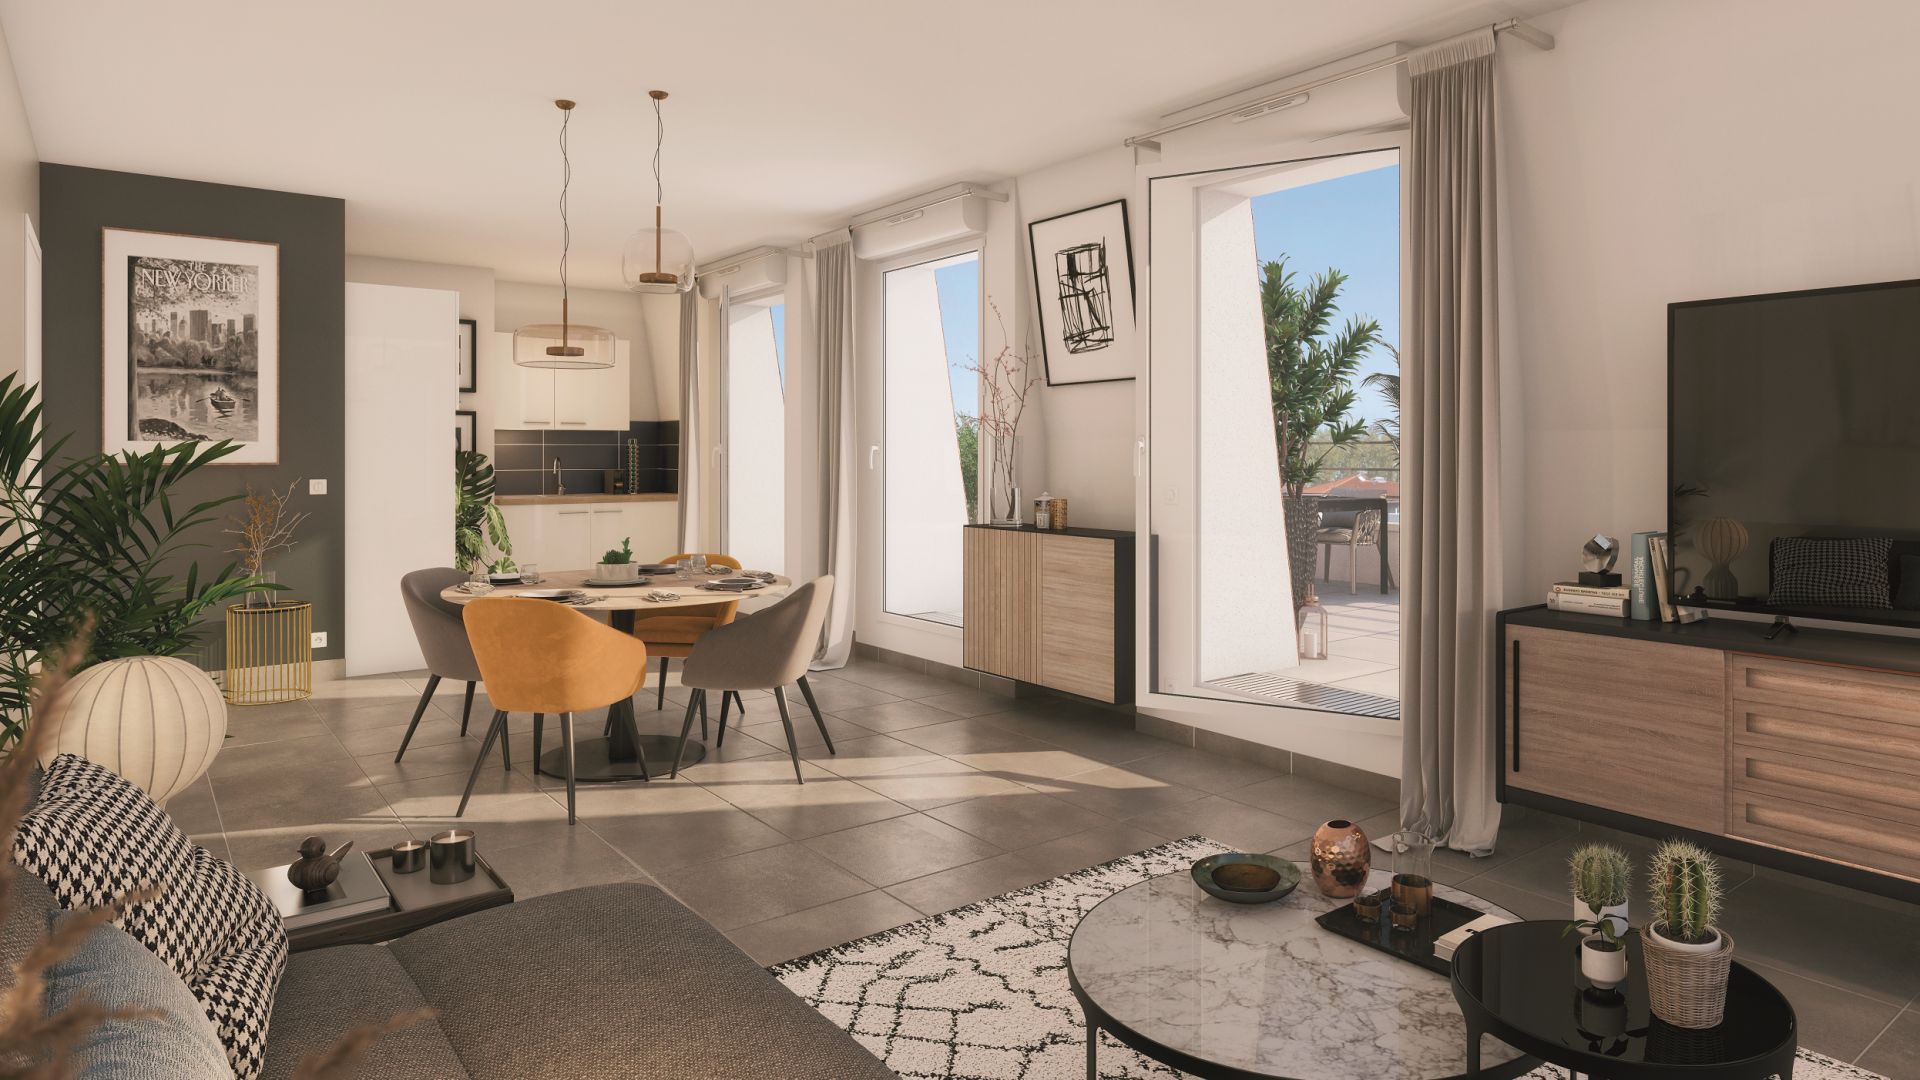 Greencity immobilier - achat appartements neufs du T1 au T3 - Résidence L'Olympie - 78250 Meulan-en-Yvelines - vue intérieure